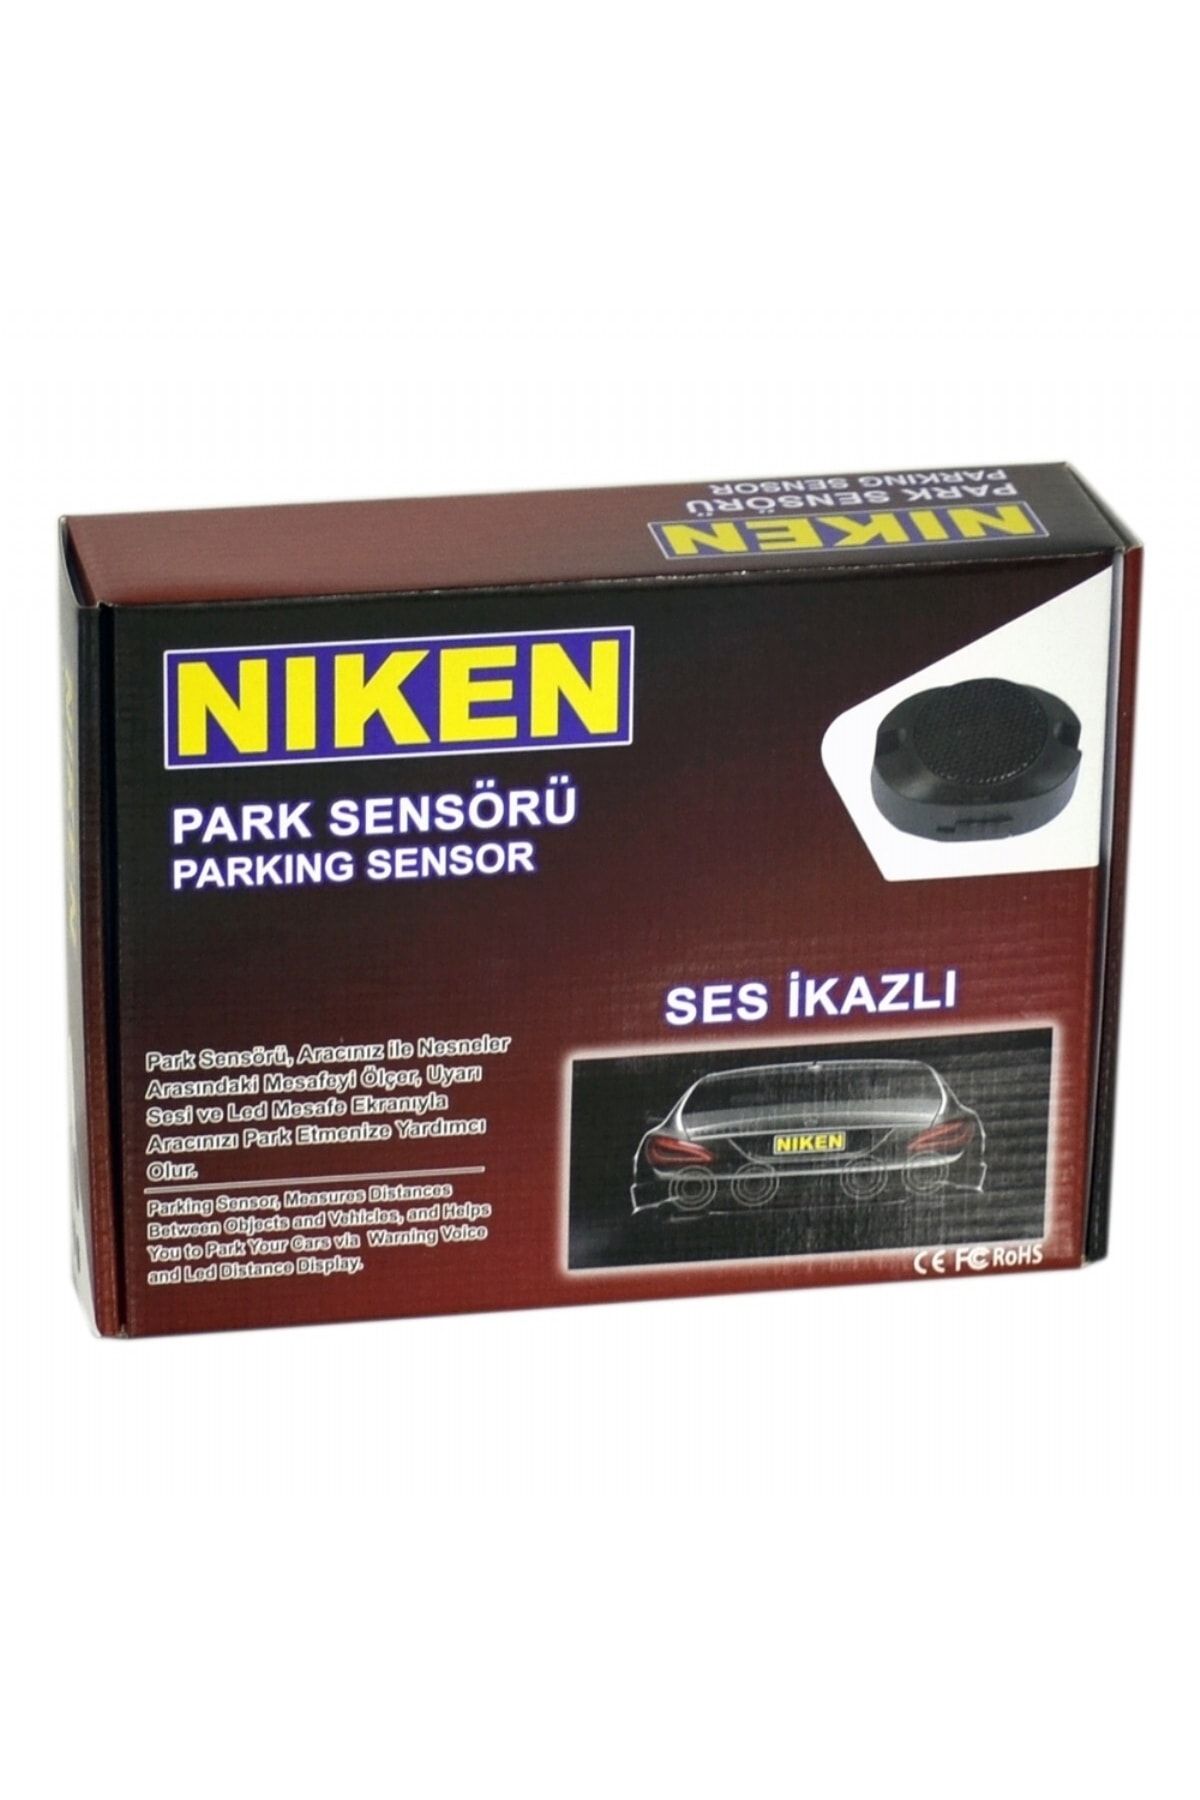 Niken Park Sensörü Ses Ikazlı Gri